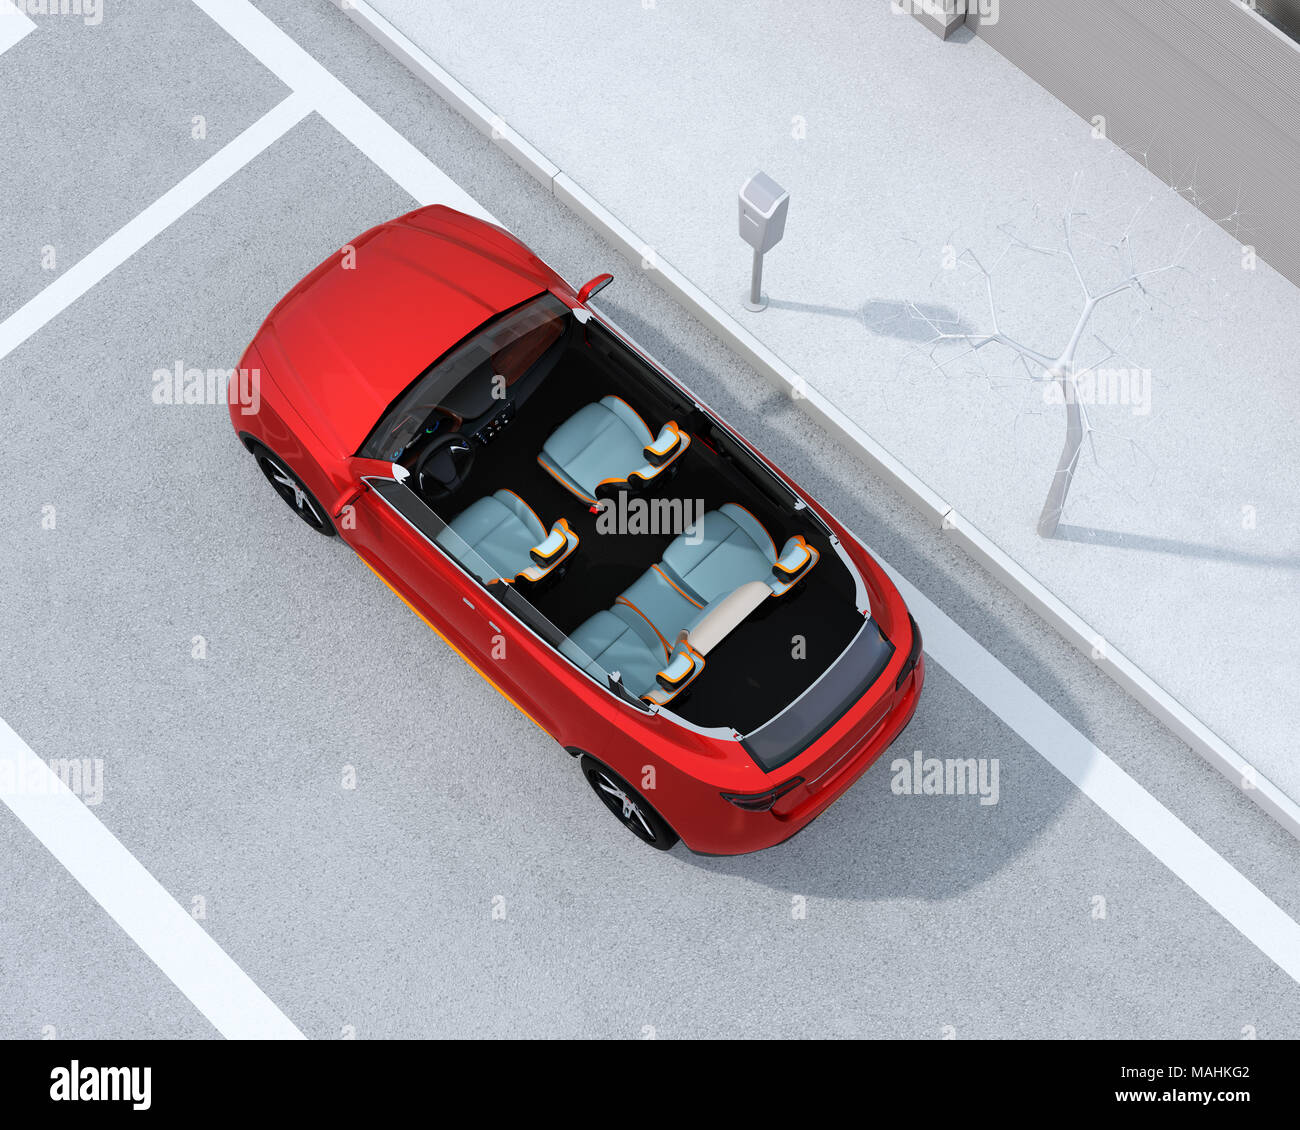 Red eléctrica SUV seccionada en un aparcamiento en la calle. Representación 3D imagen. Foto de stock